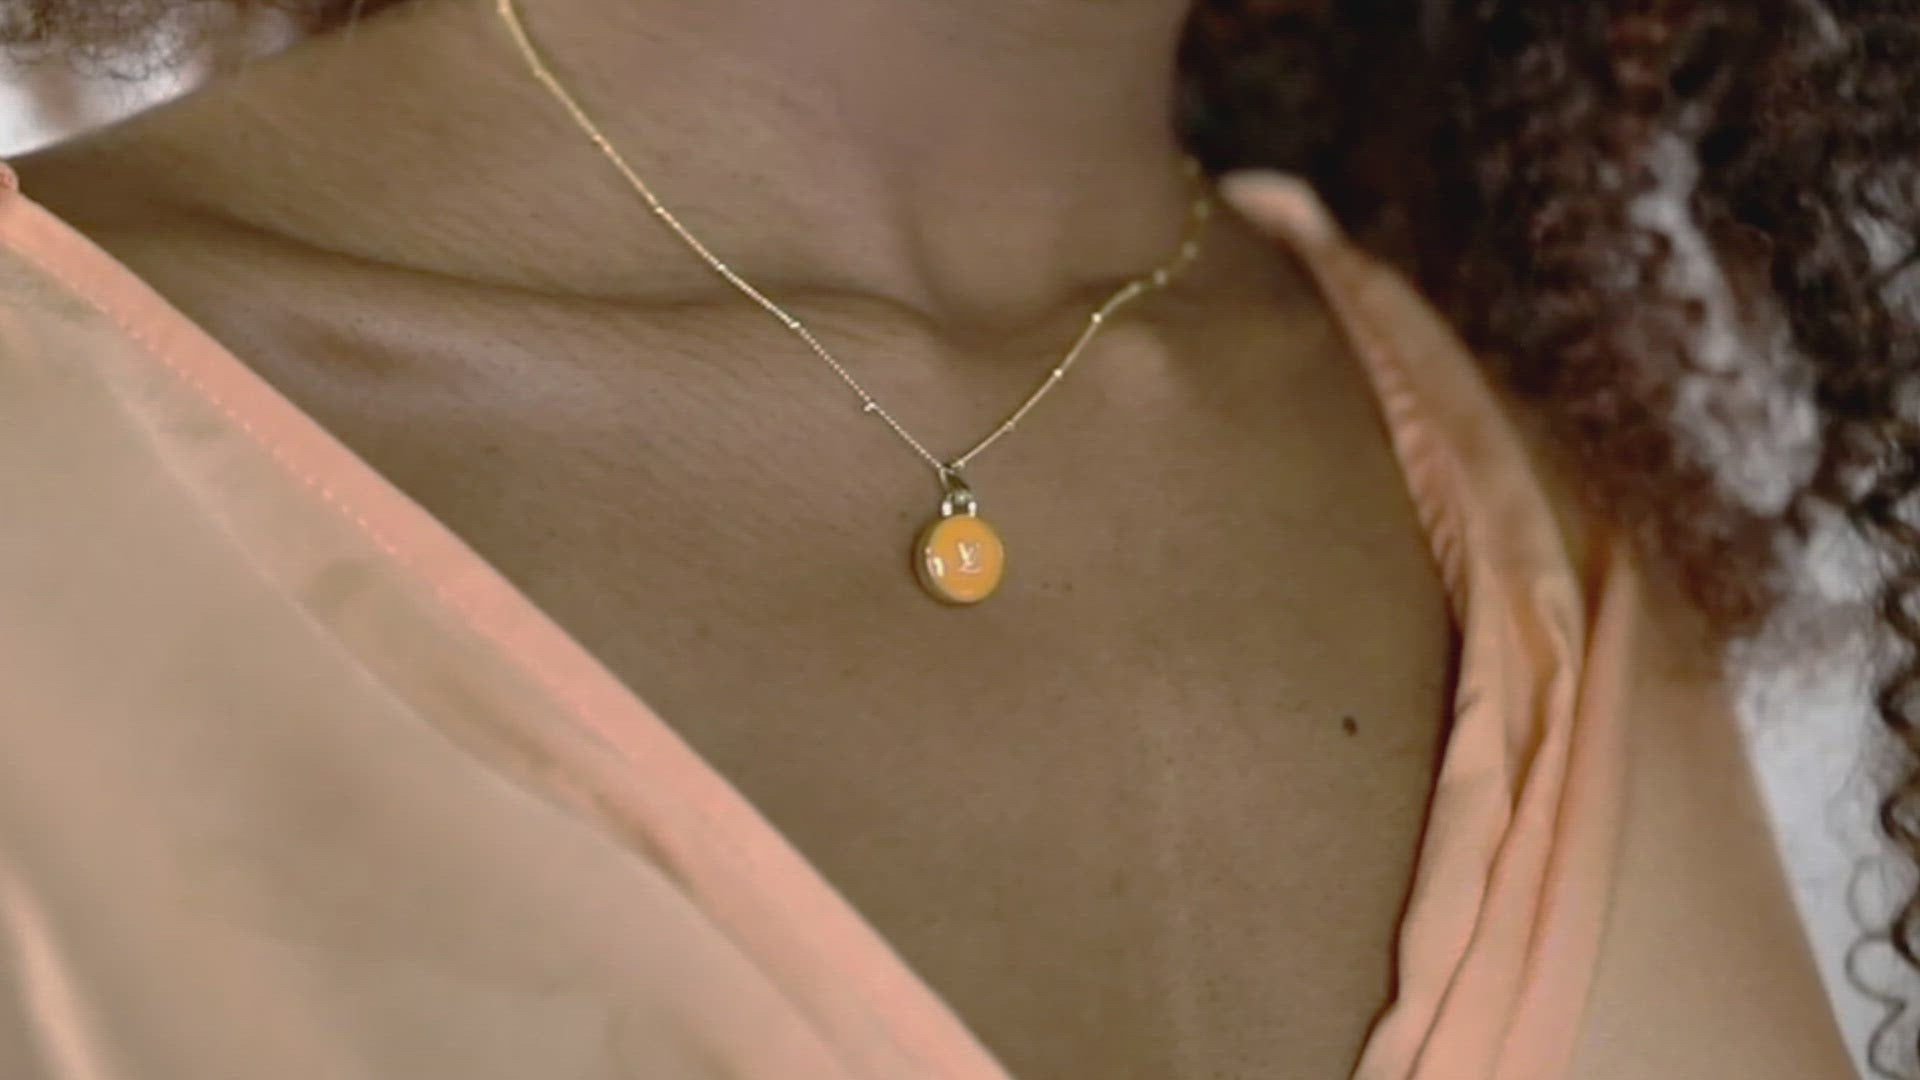 Reworked Necklace - Yellow Charm – zbyzo